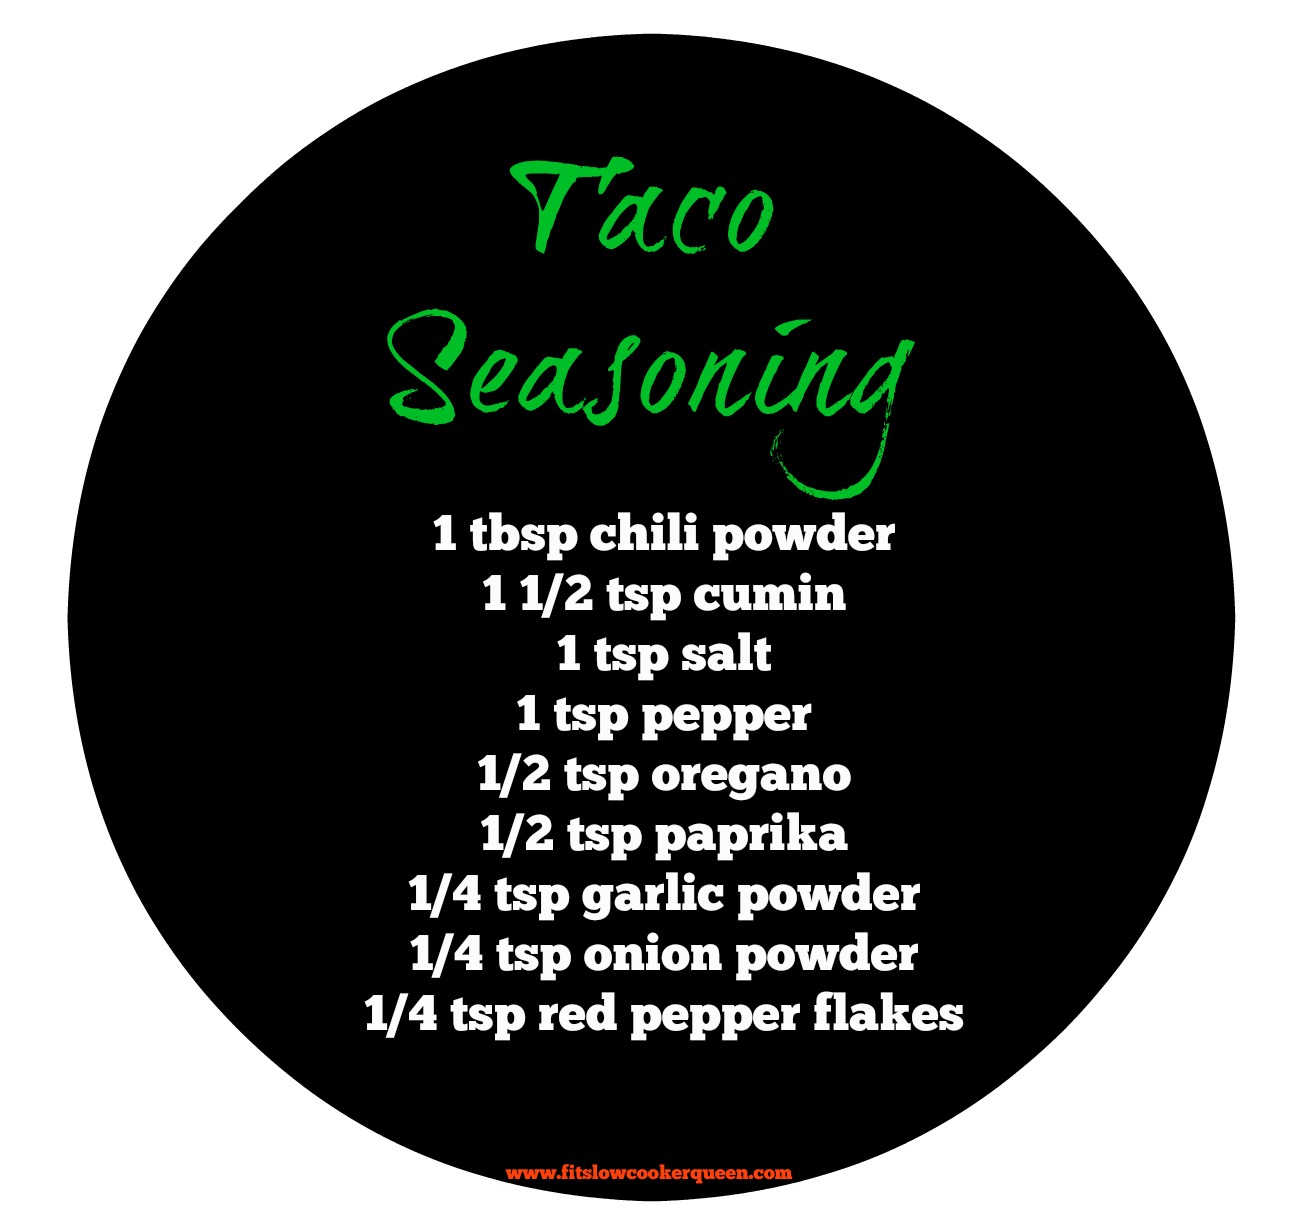 taco seasoning